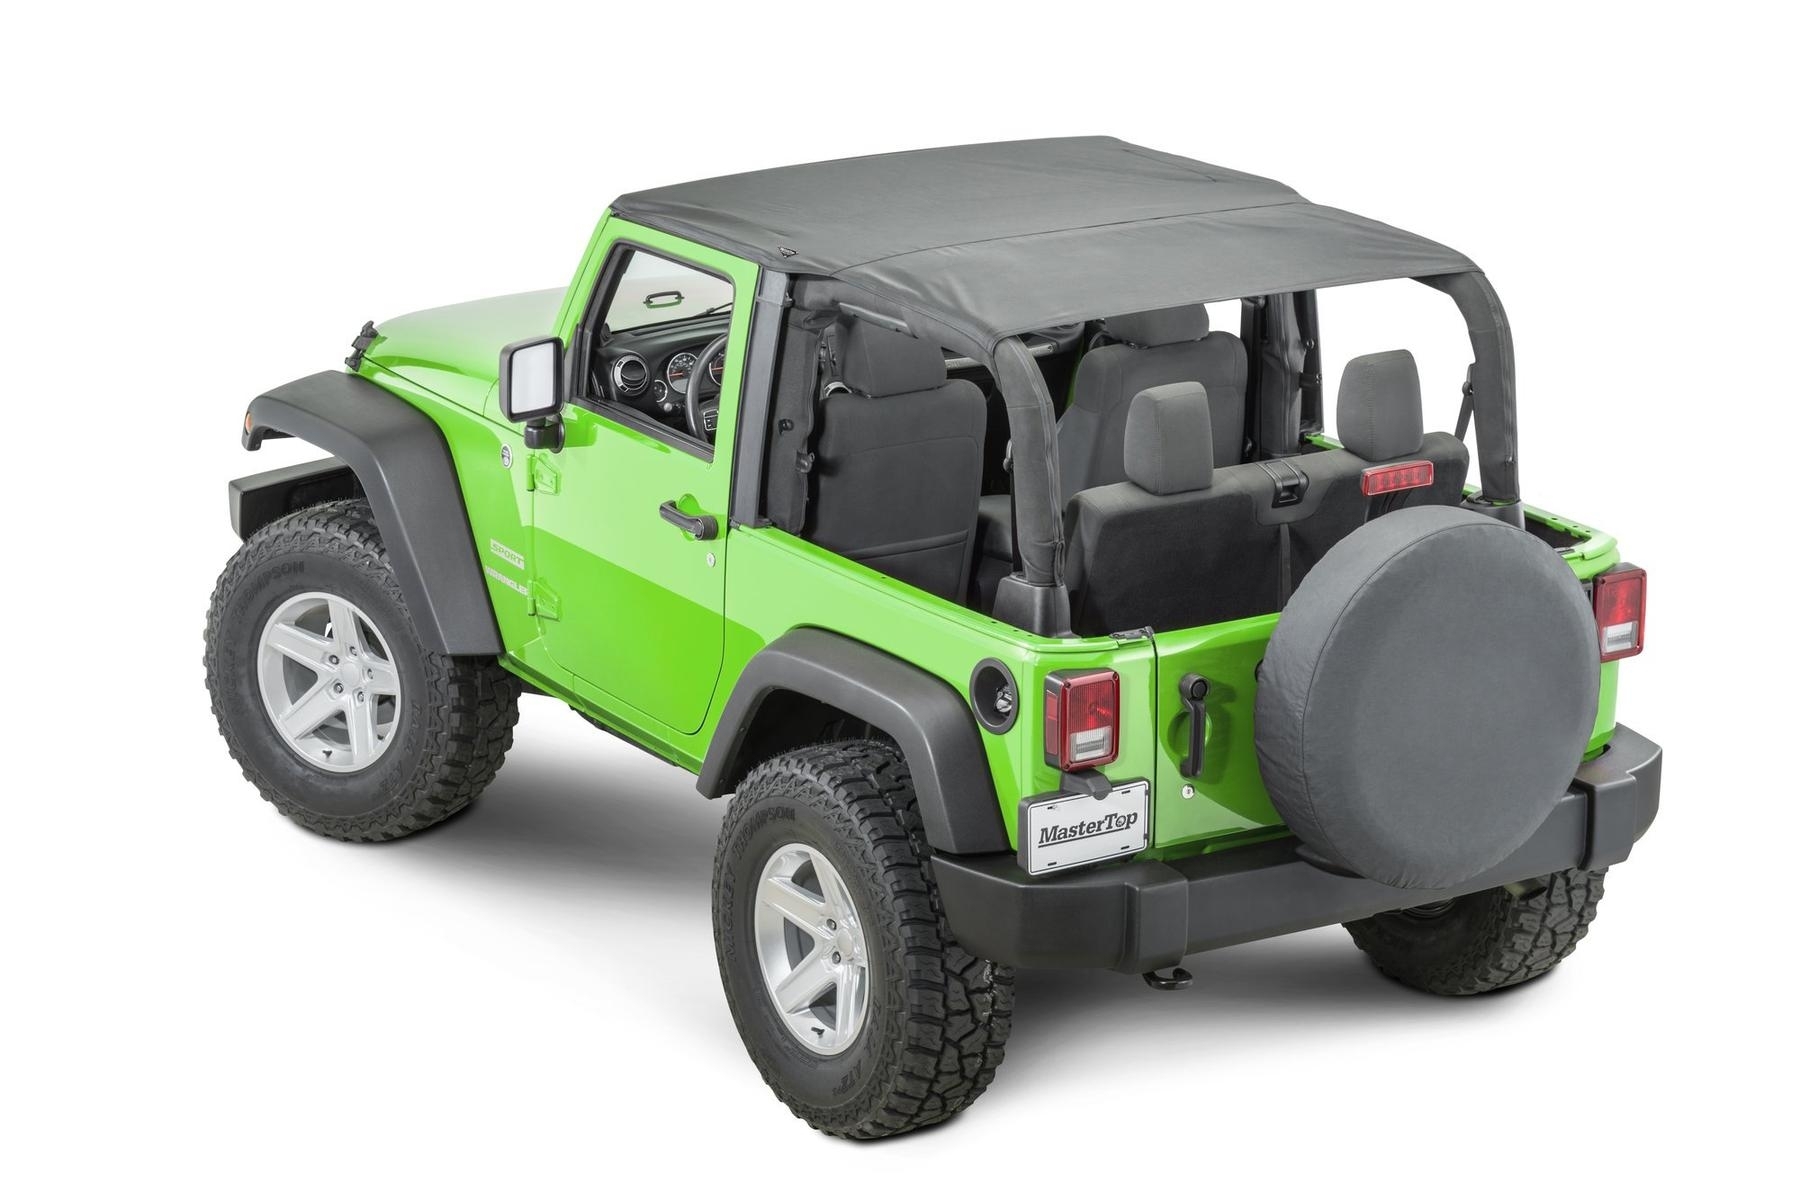 Mastertop Bimini Top Plus For 07-18 Jeep Wrangler Jk 2 Door, Black Diamond | 07-18 Jeep Wrangler